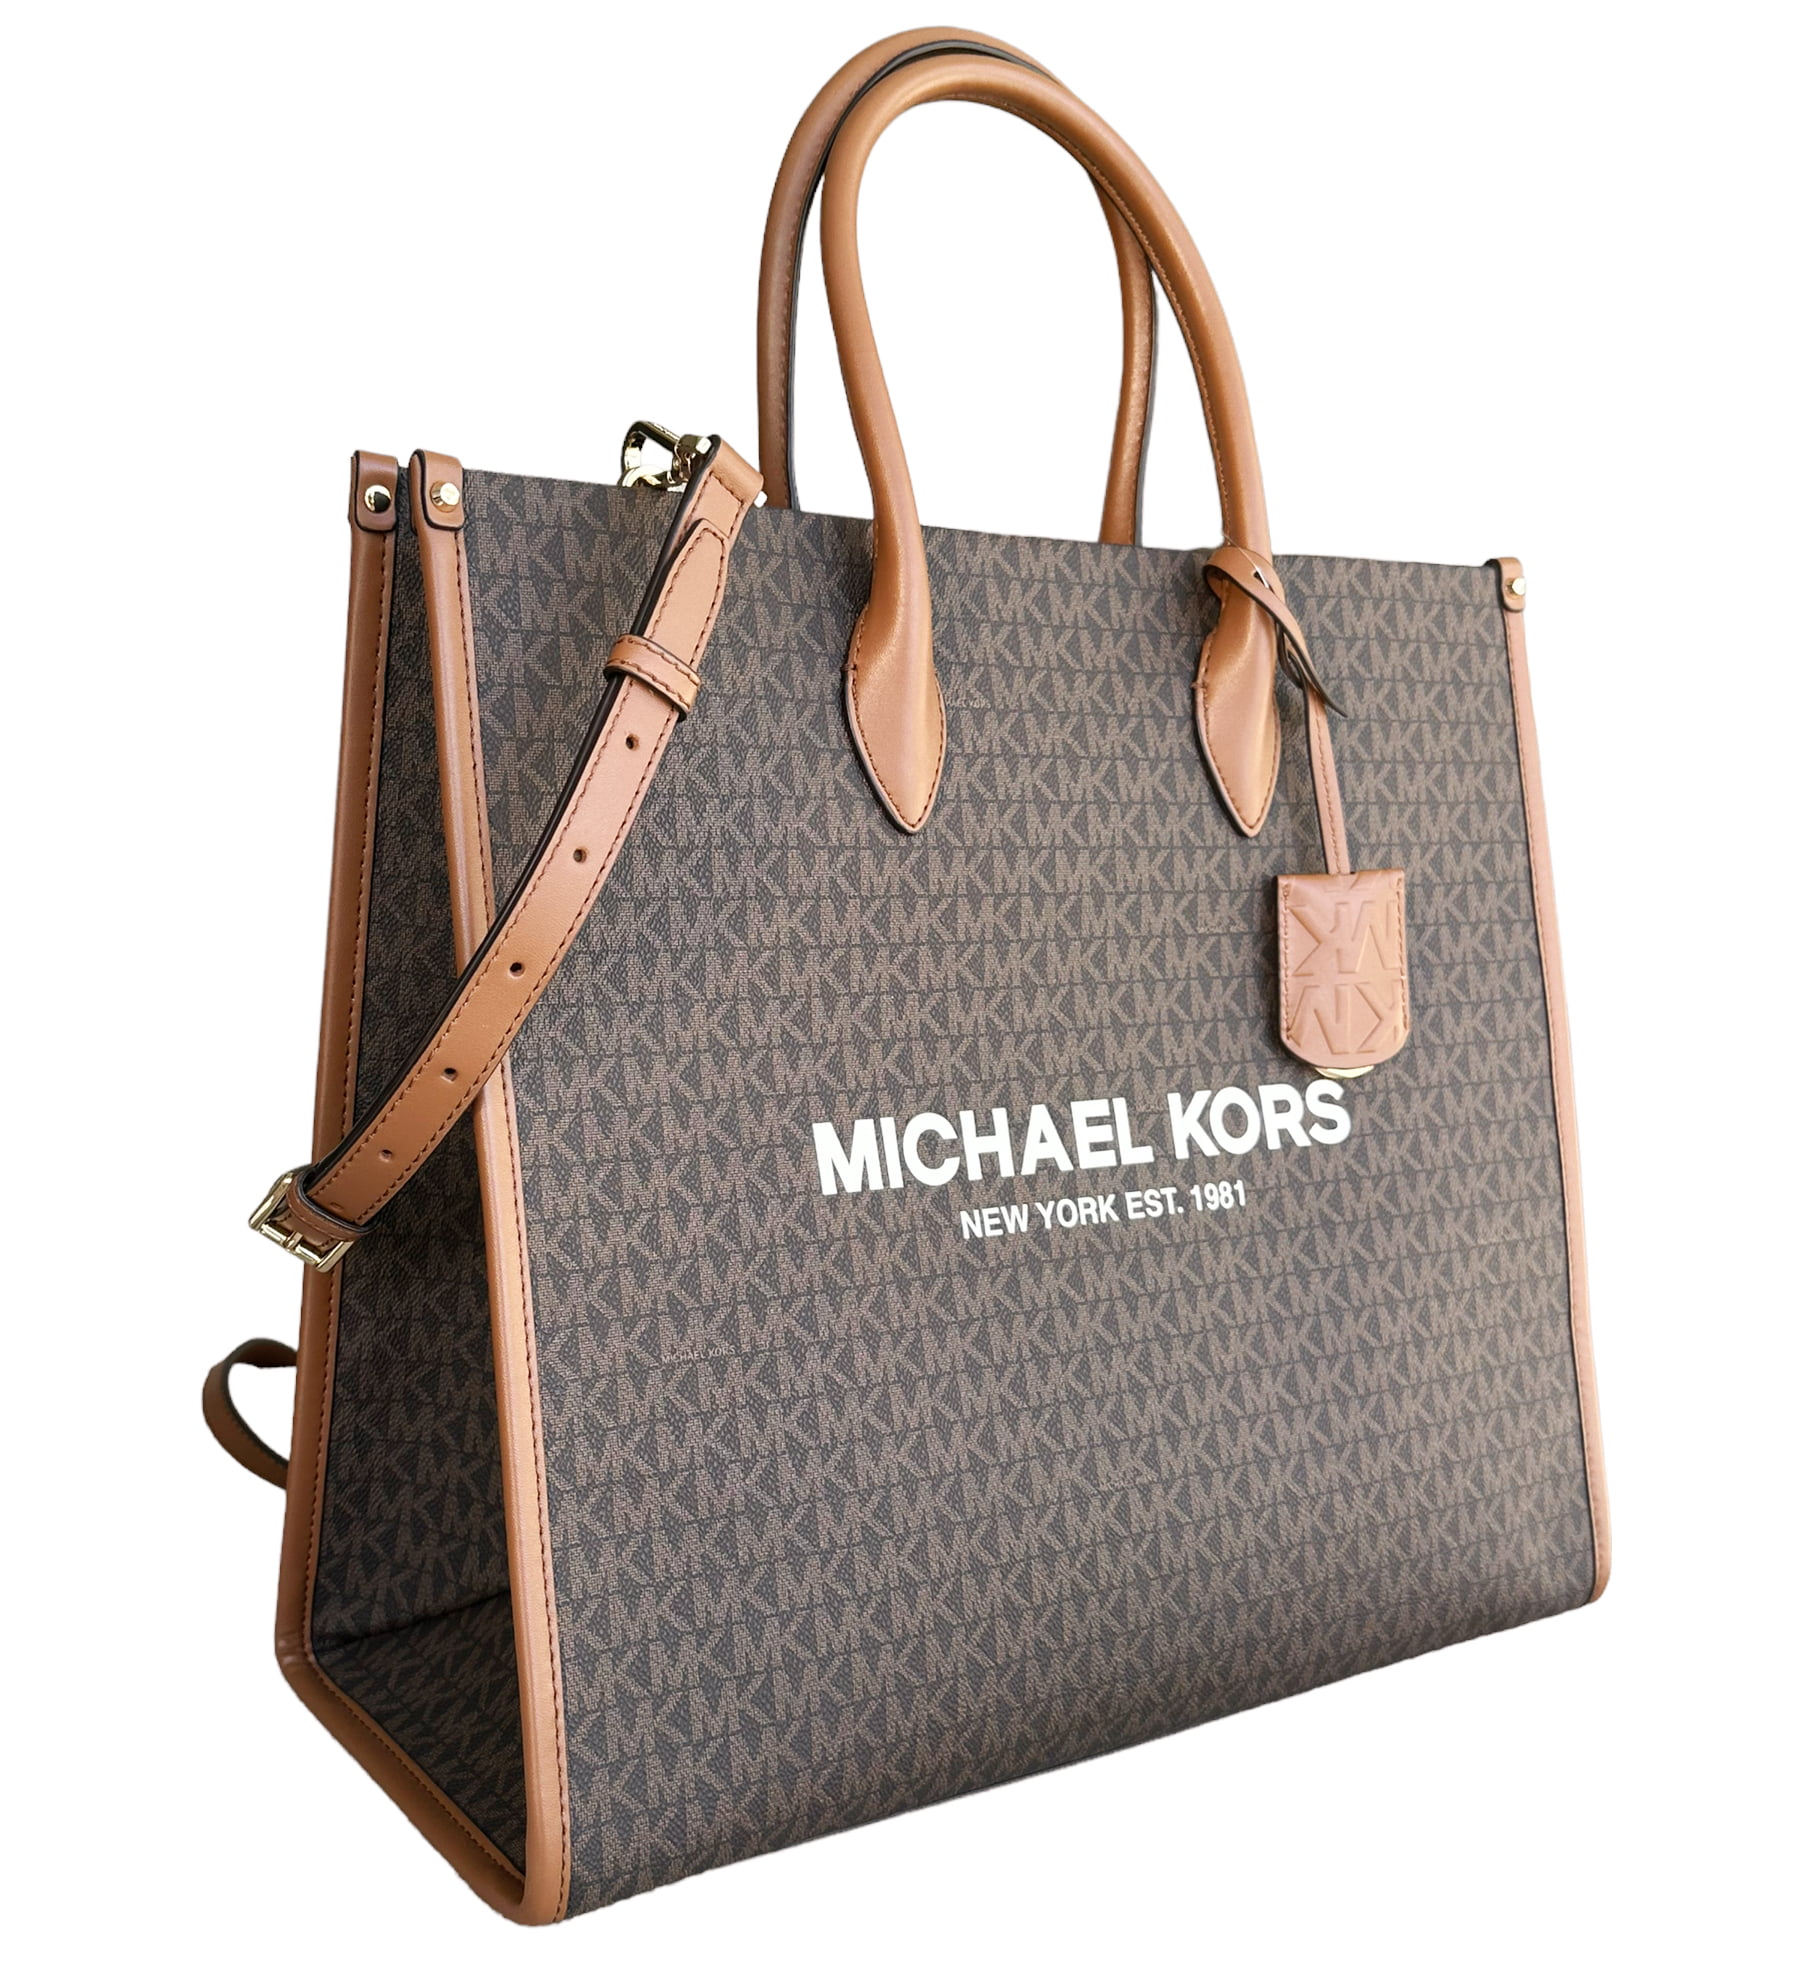 NWT Michael Kors Mirella Large Logo Large Tote Bag in Blush Pink